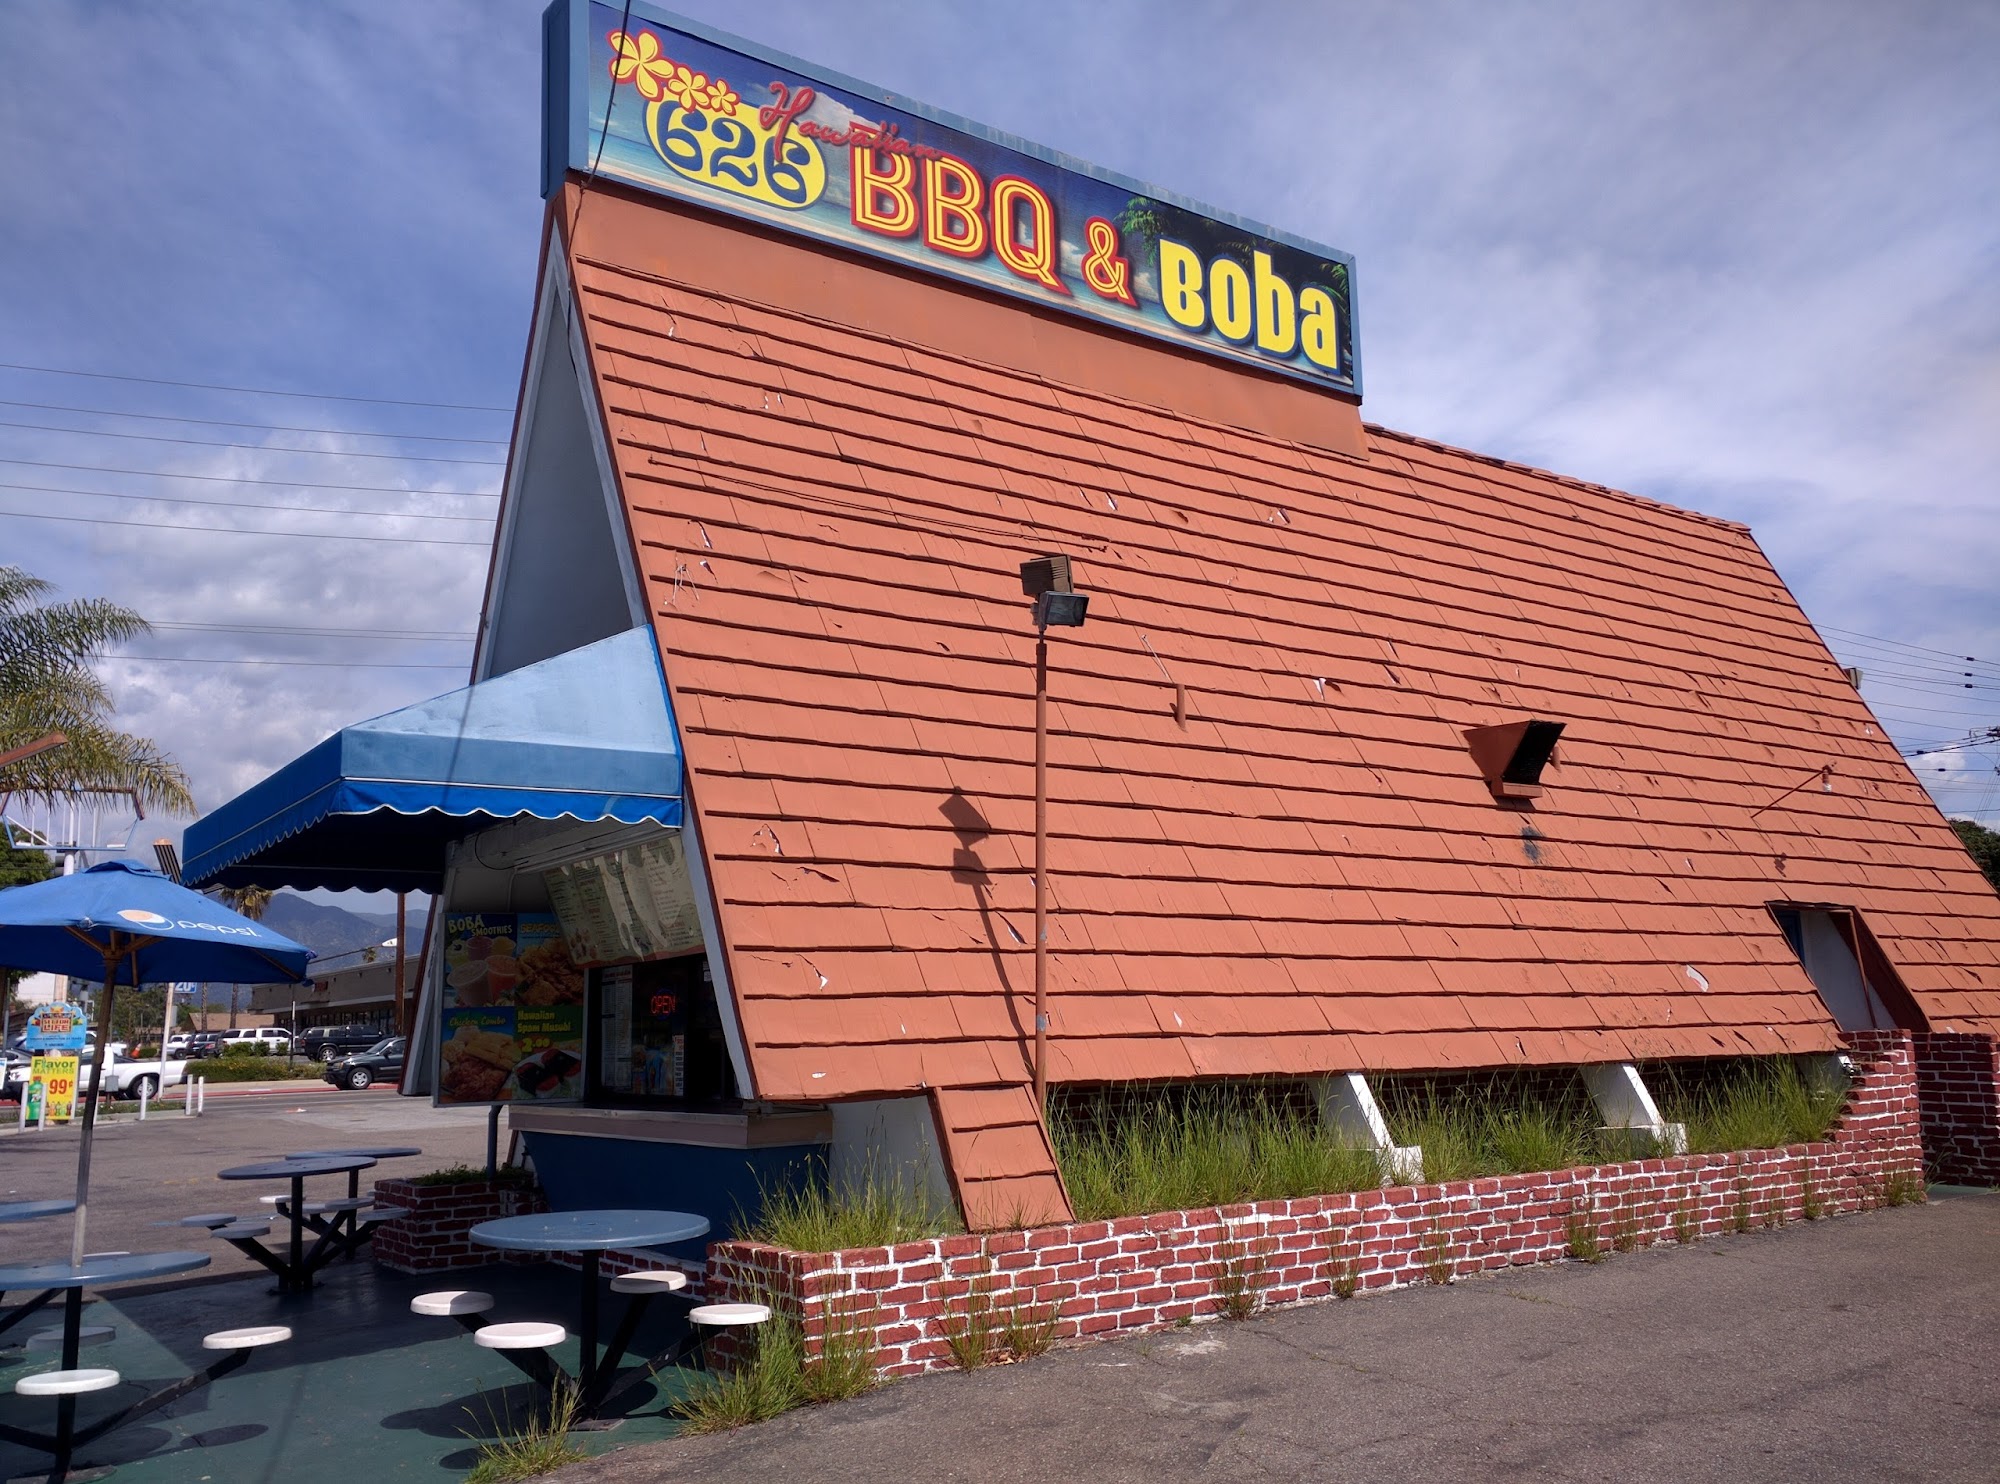 626 Hawaiian BBQ & Boba